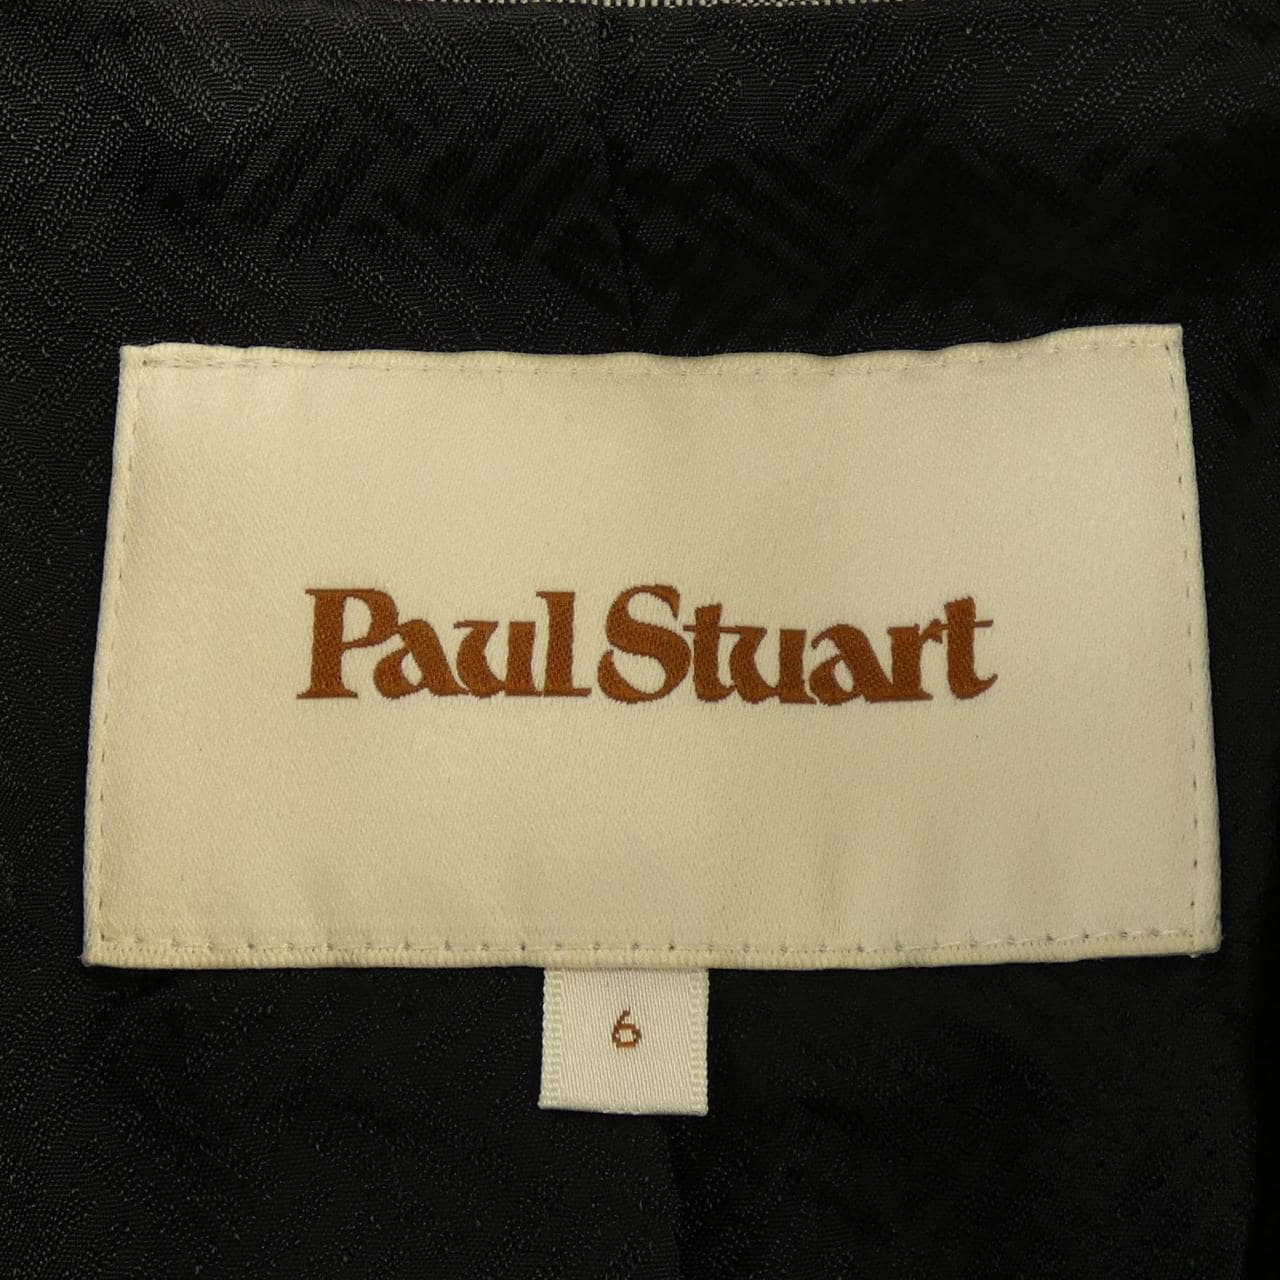 Paul Stuart PAUL STUART jacket